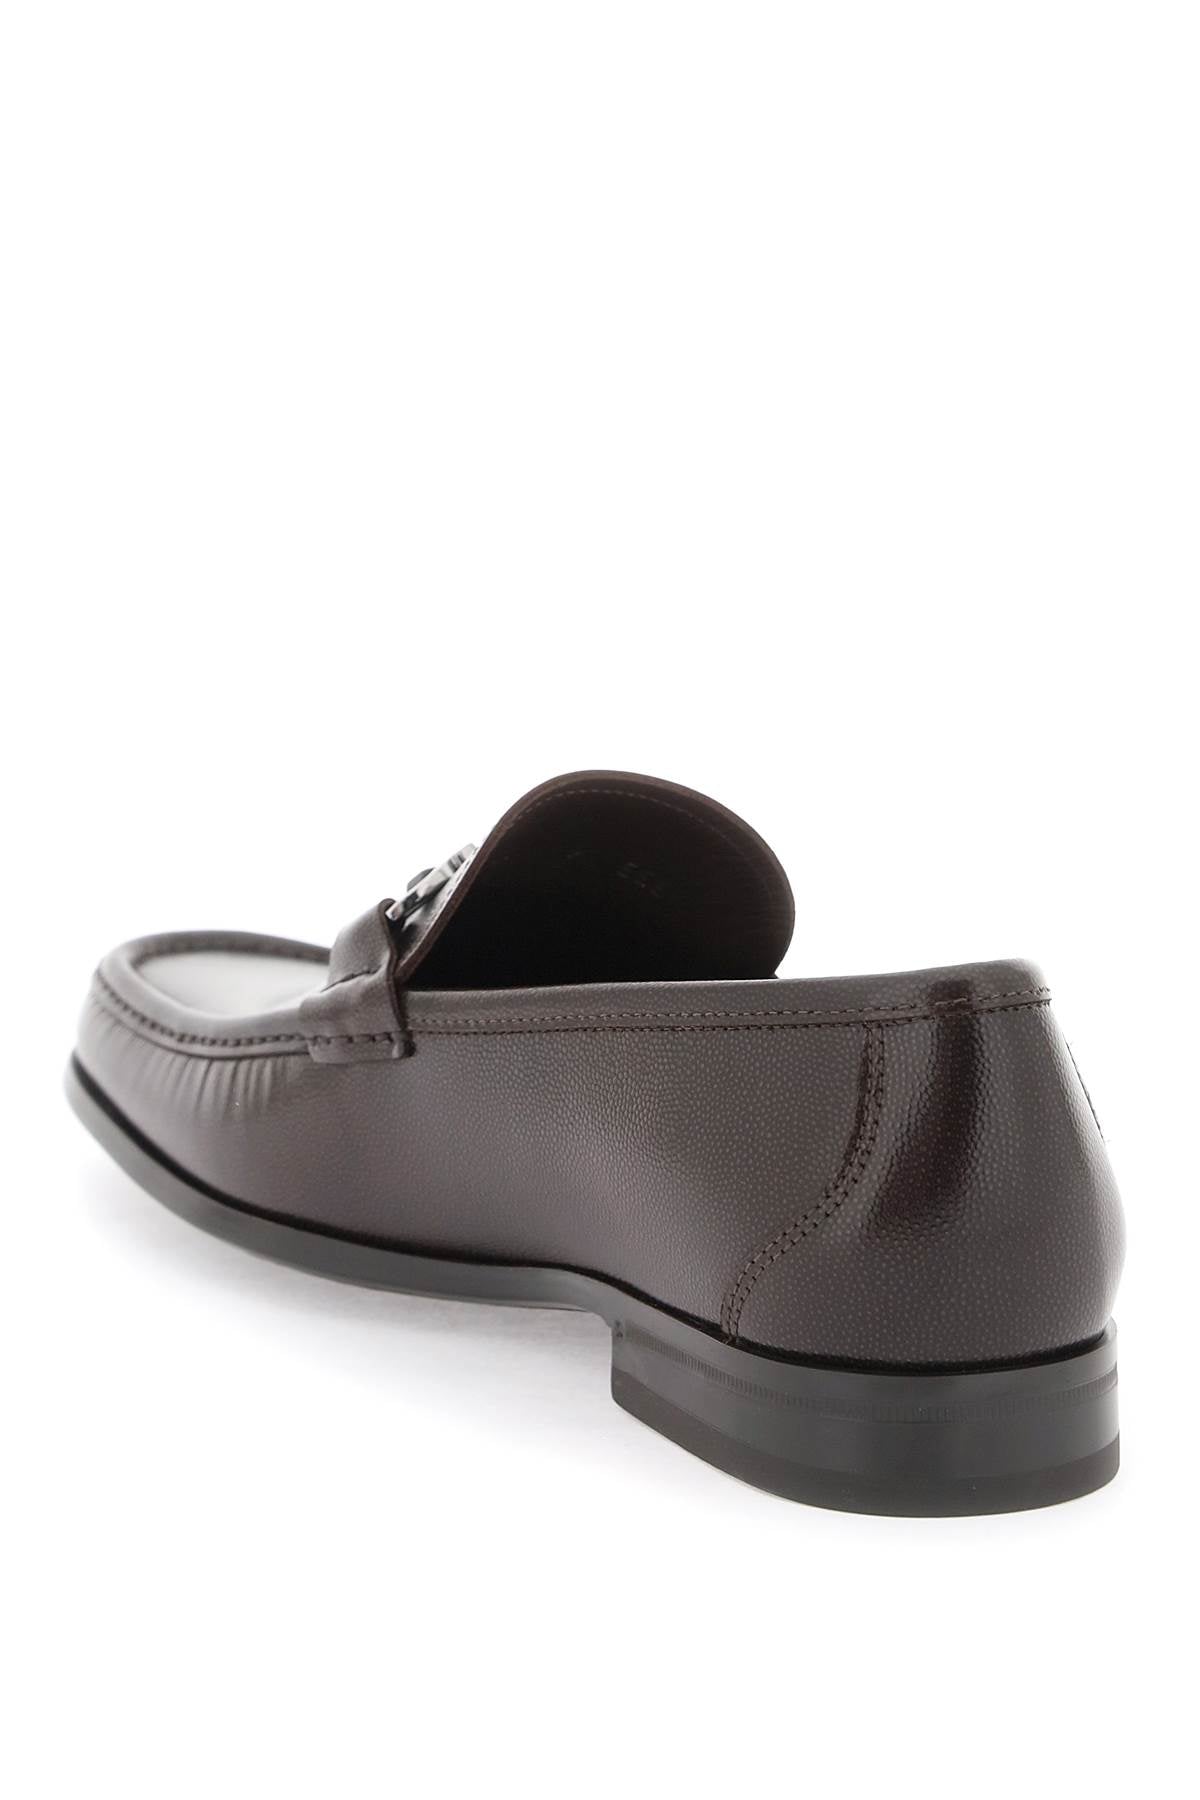 精選SS24男生皮革麂皮鞋 - 平滑棕色鑲有金屬Gancini鉤飾